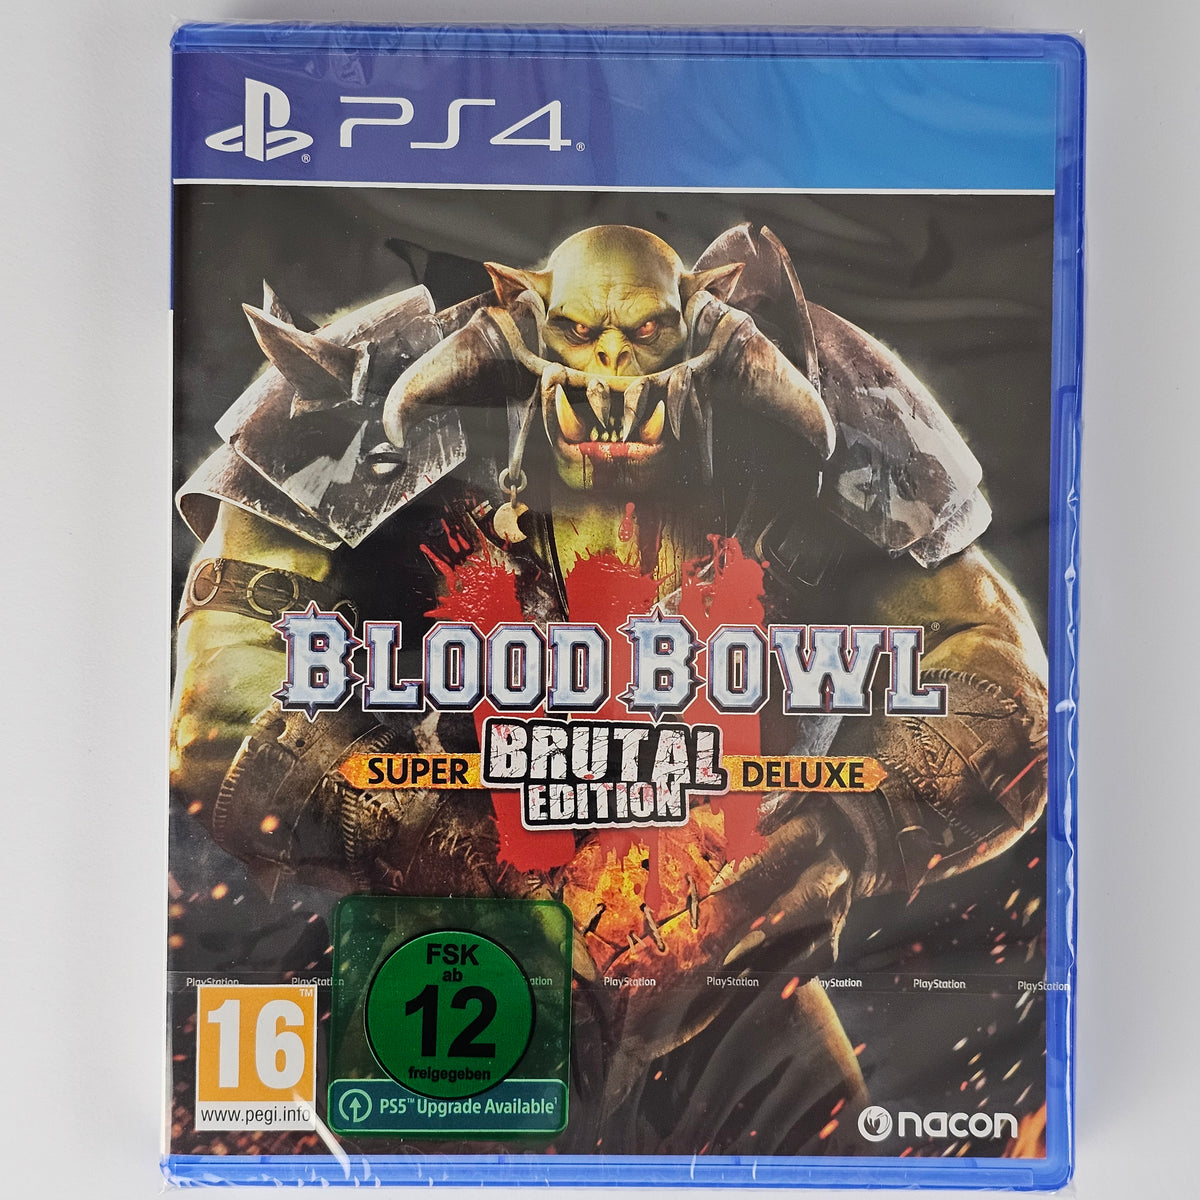 Blood Bowl 3 Brutal Edition Super [PS4]